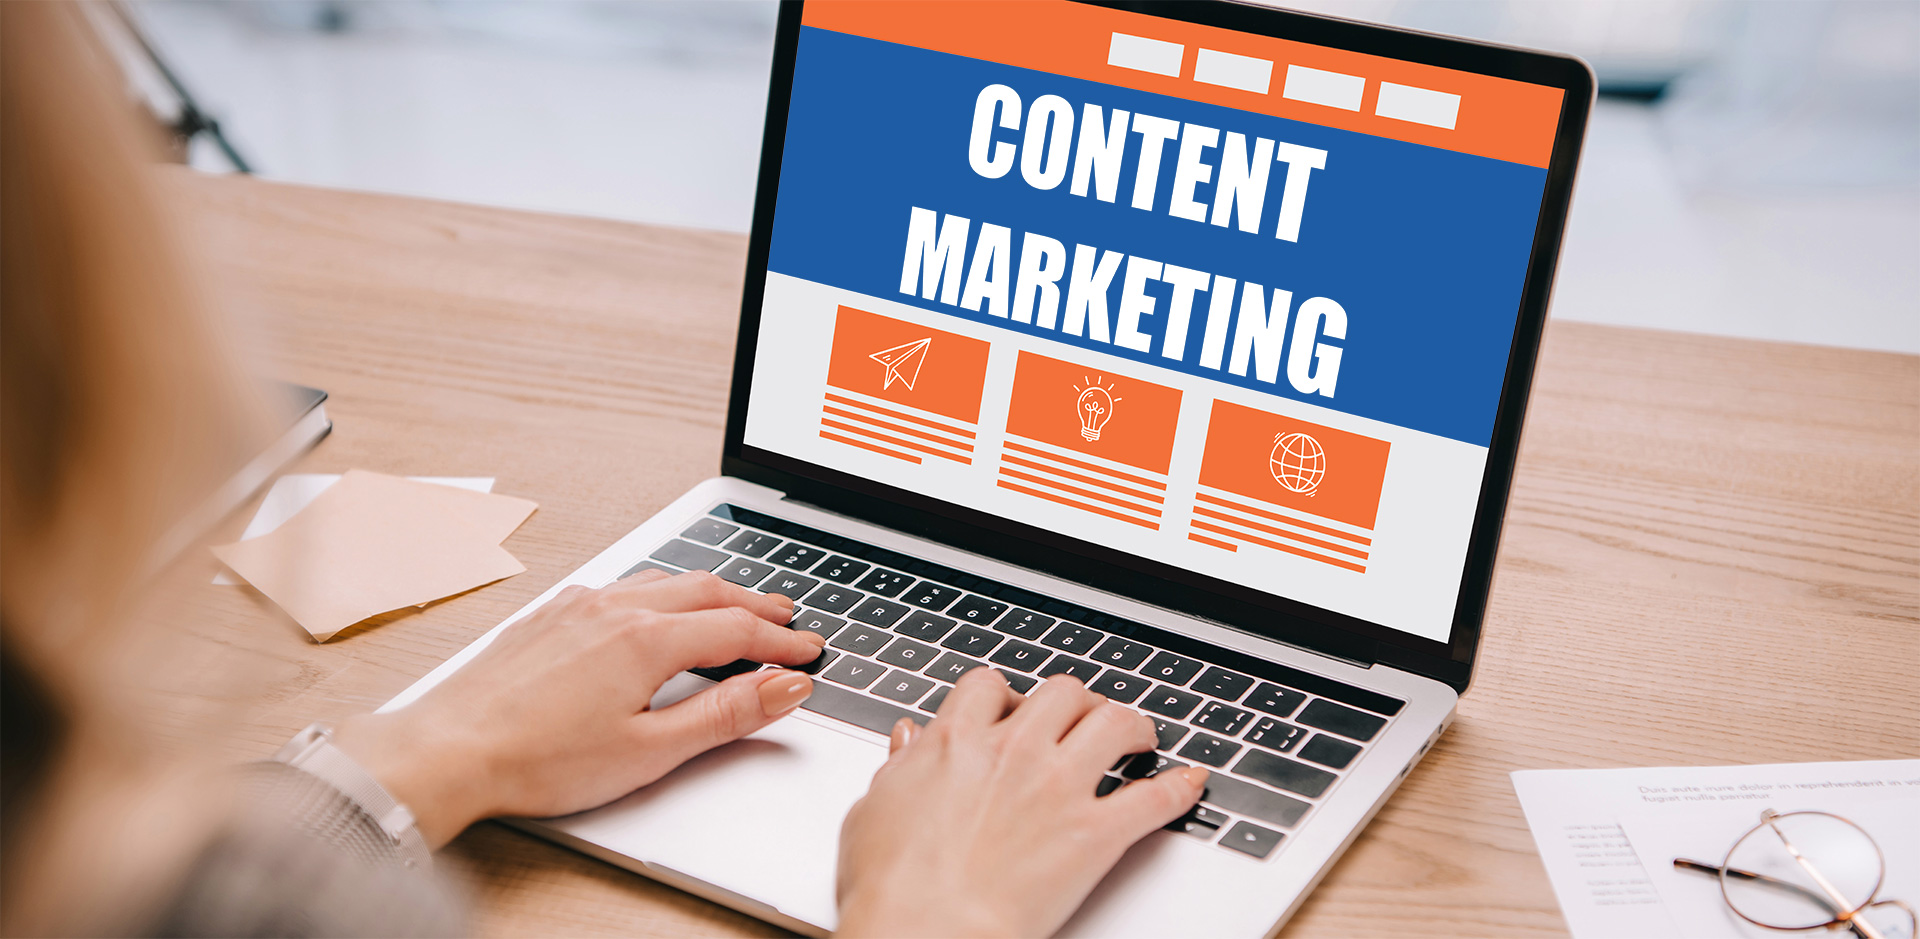 Content Marketing Tactics